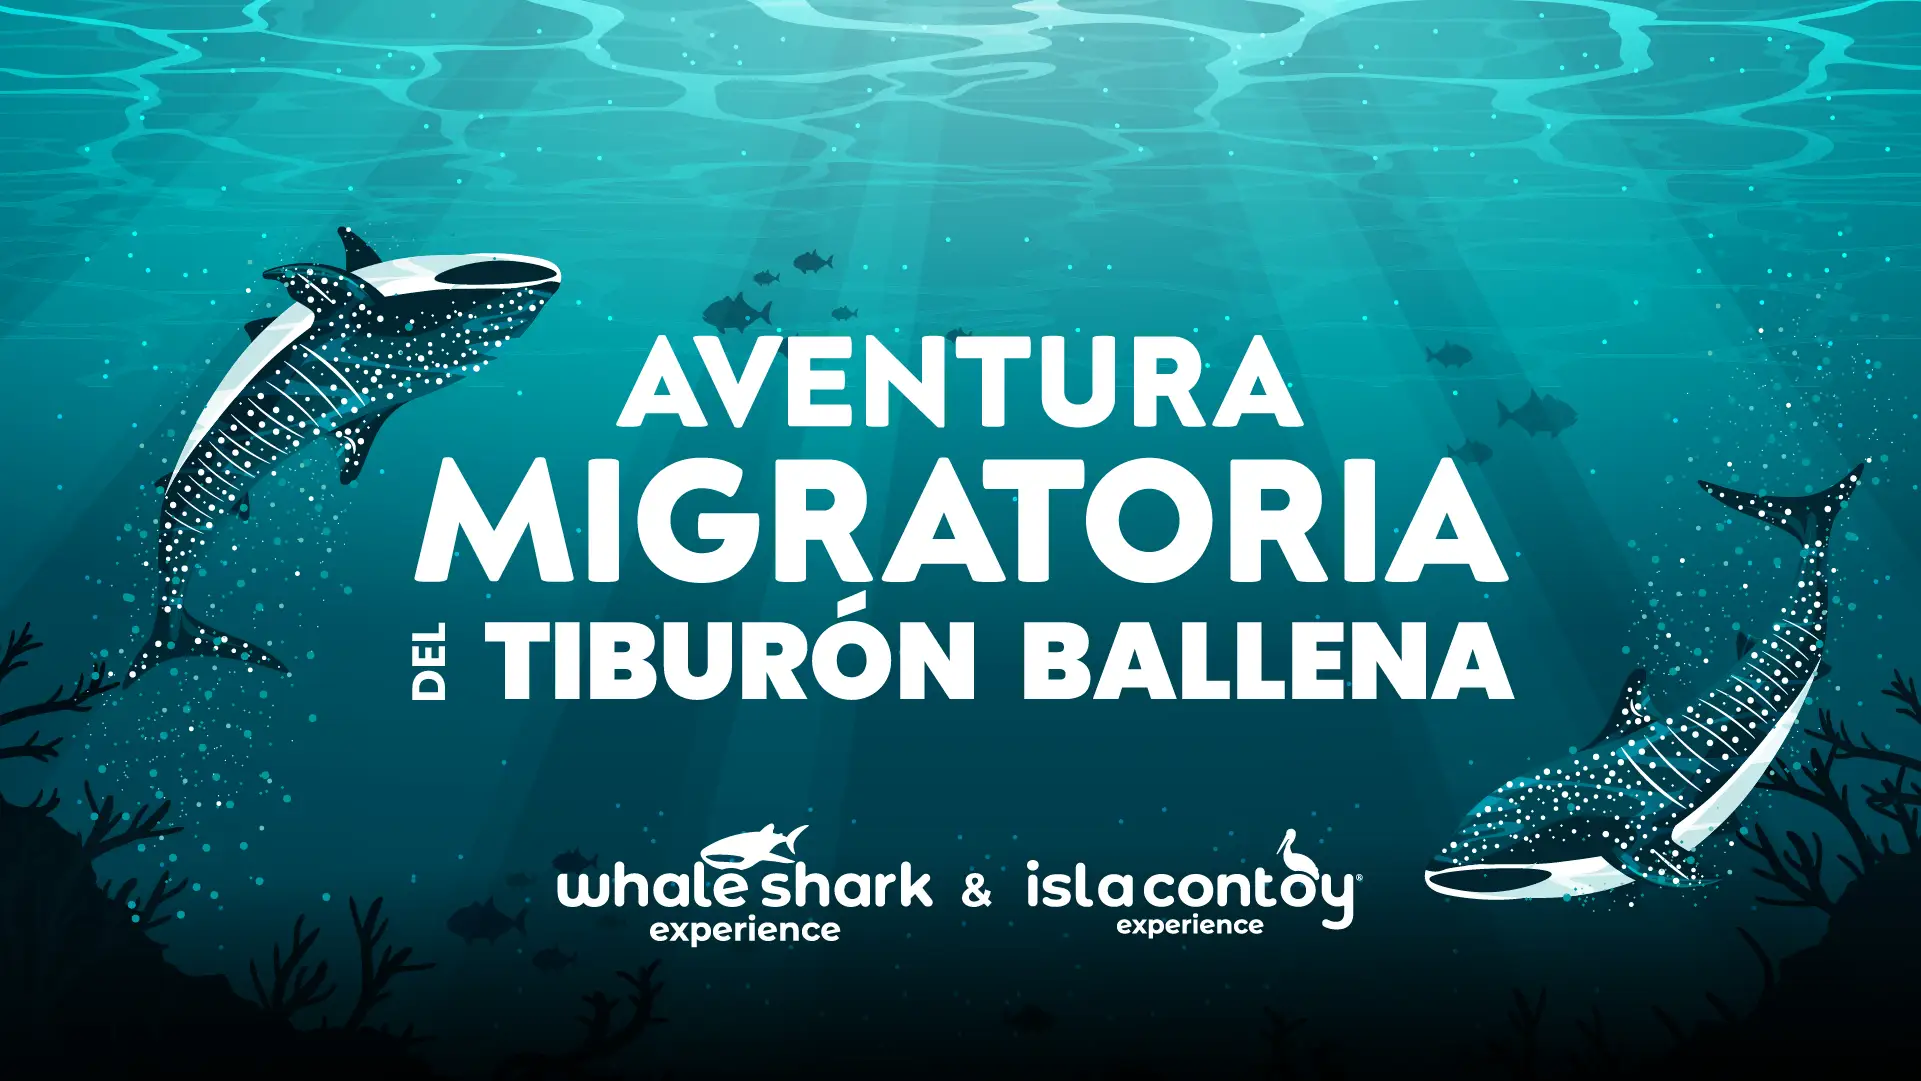 Tiburón Ballena: Aventura Migratoria en Isla Contoy